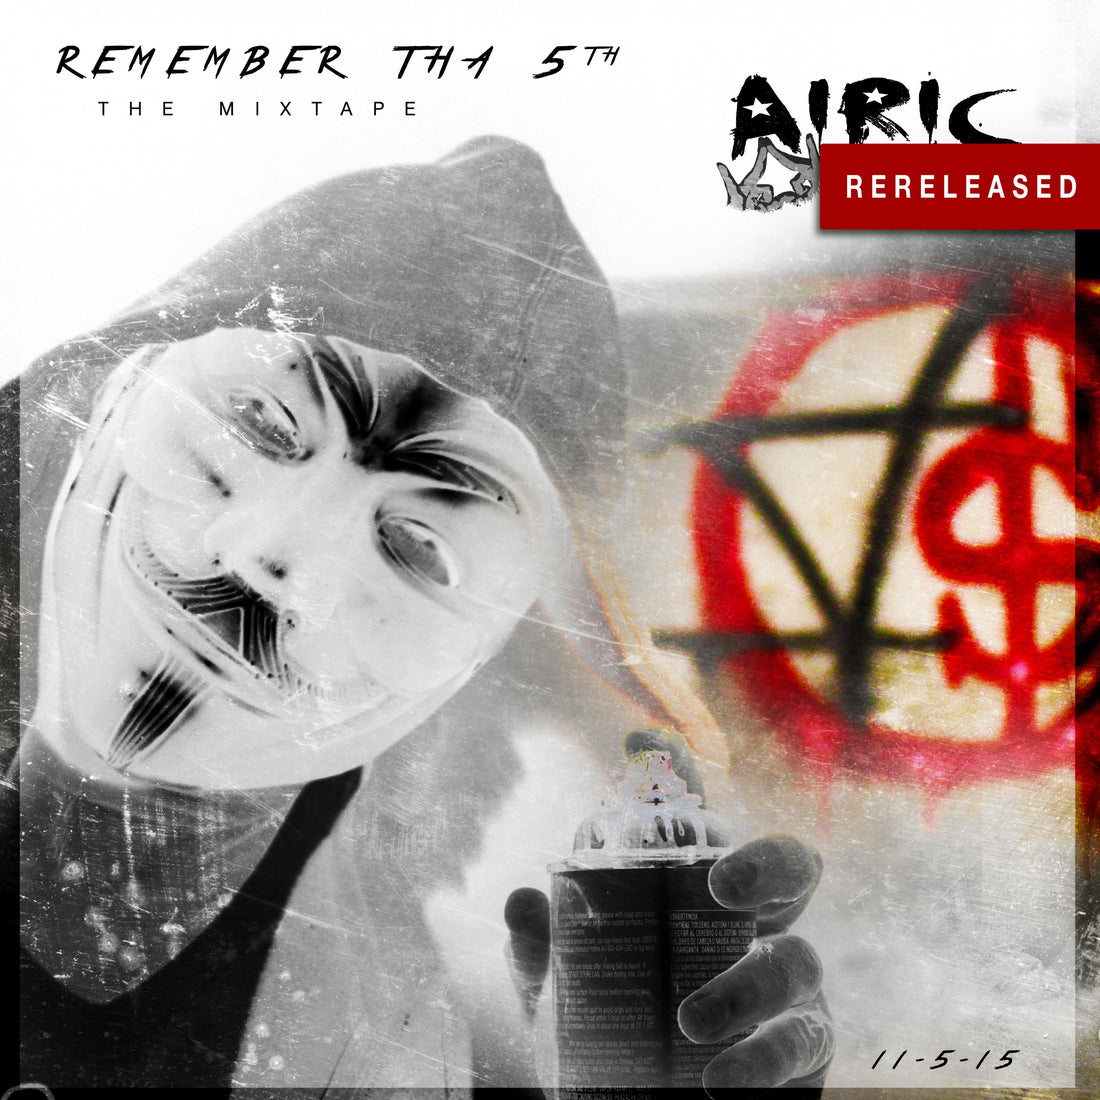 Airic – Remember Tha 5th